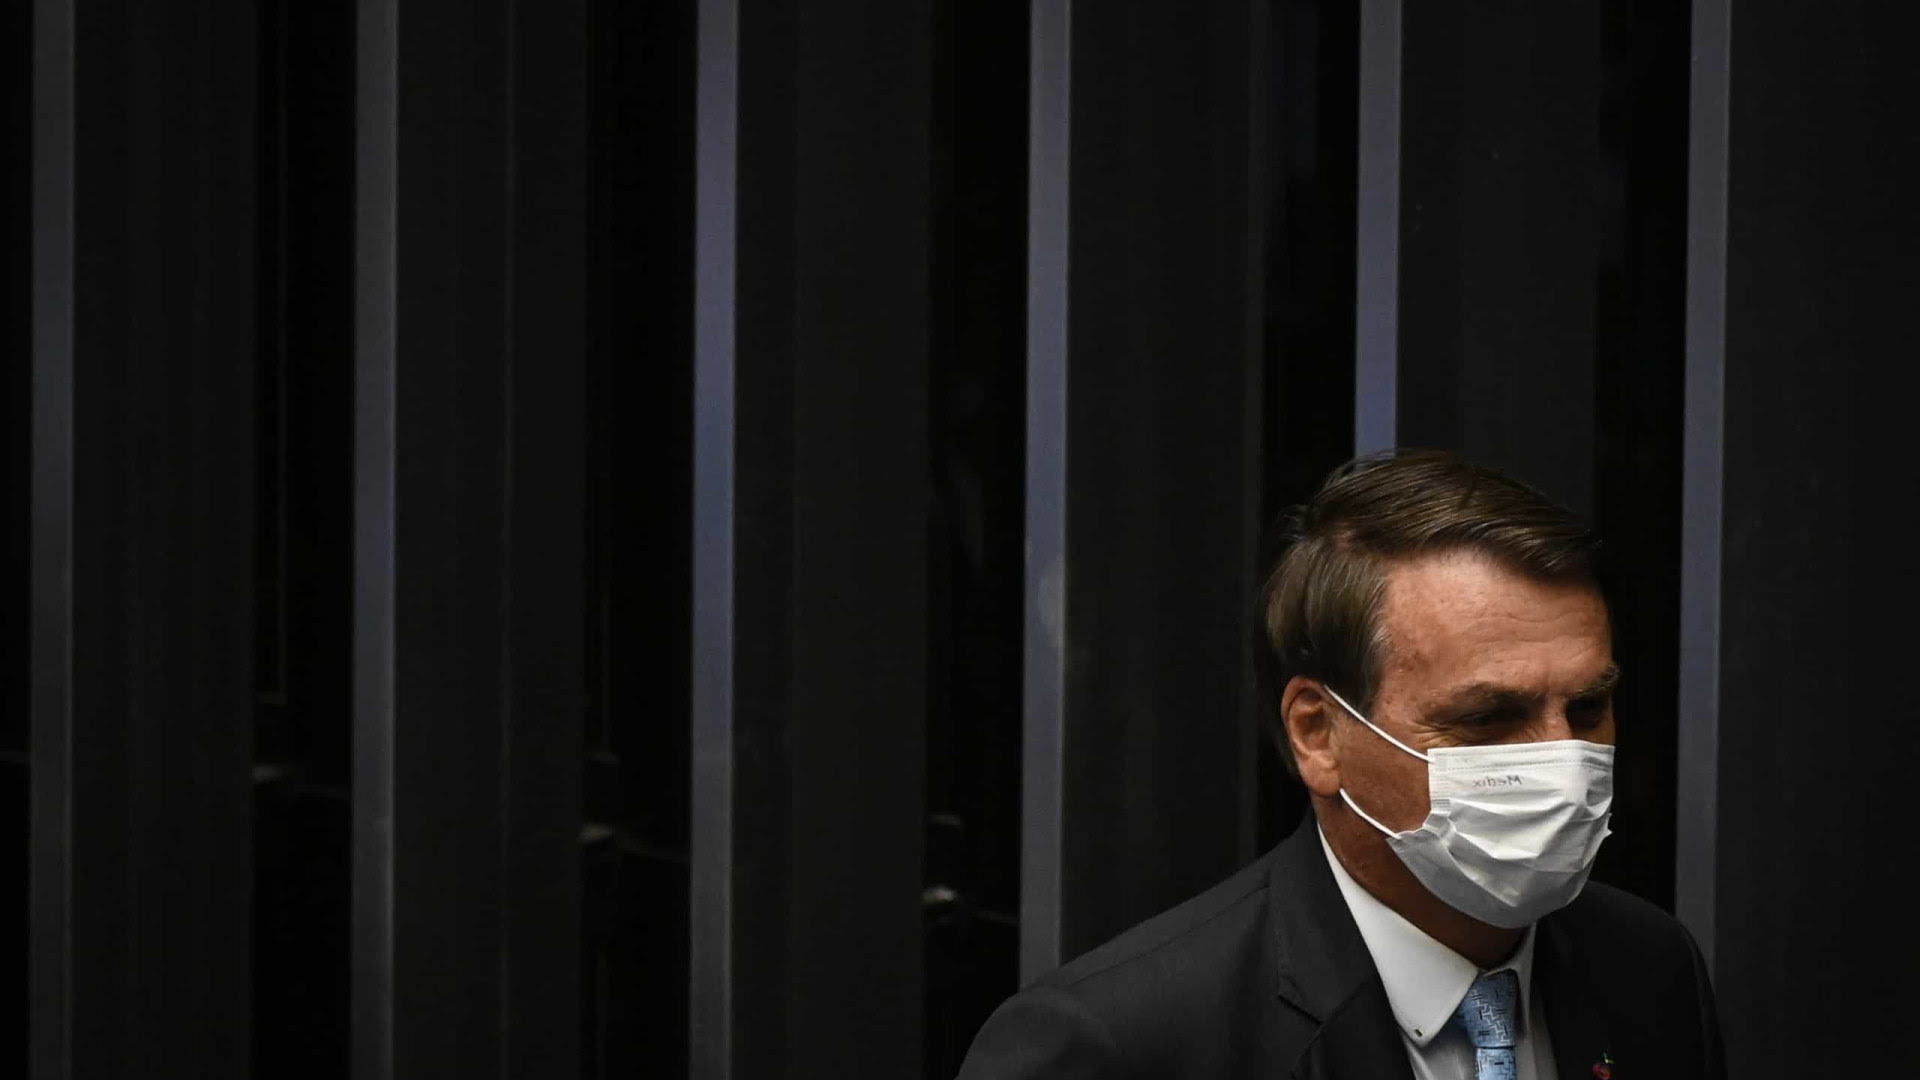 Para blindar governo, Bolsonaro emplaca aliados em comissões estratégicas no Senado